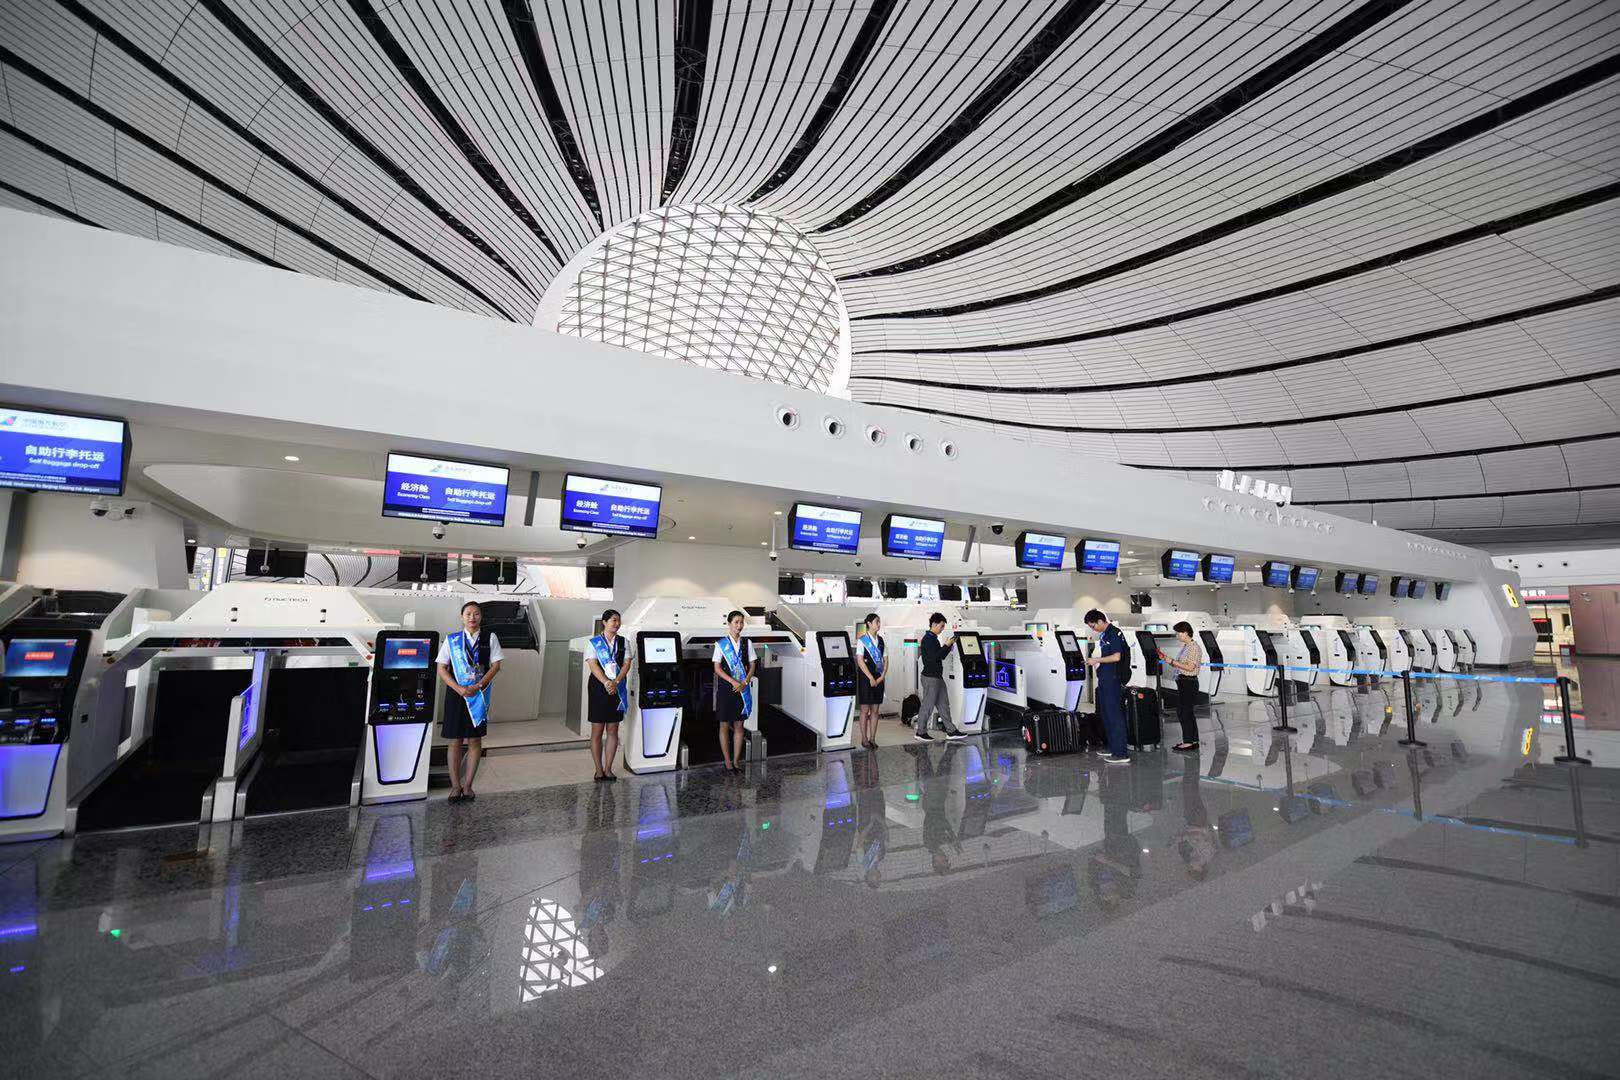 登机口,35个值机柜台,16个行李转盘,8条安检通道,模拟旅客通过机场